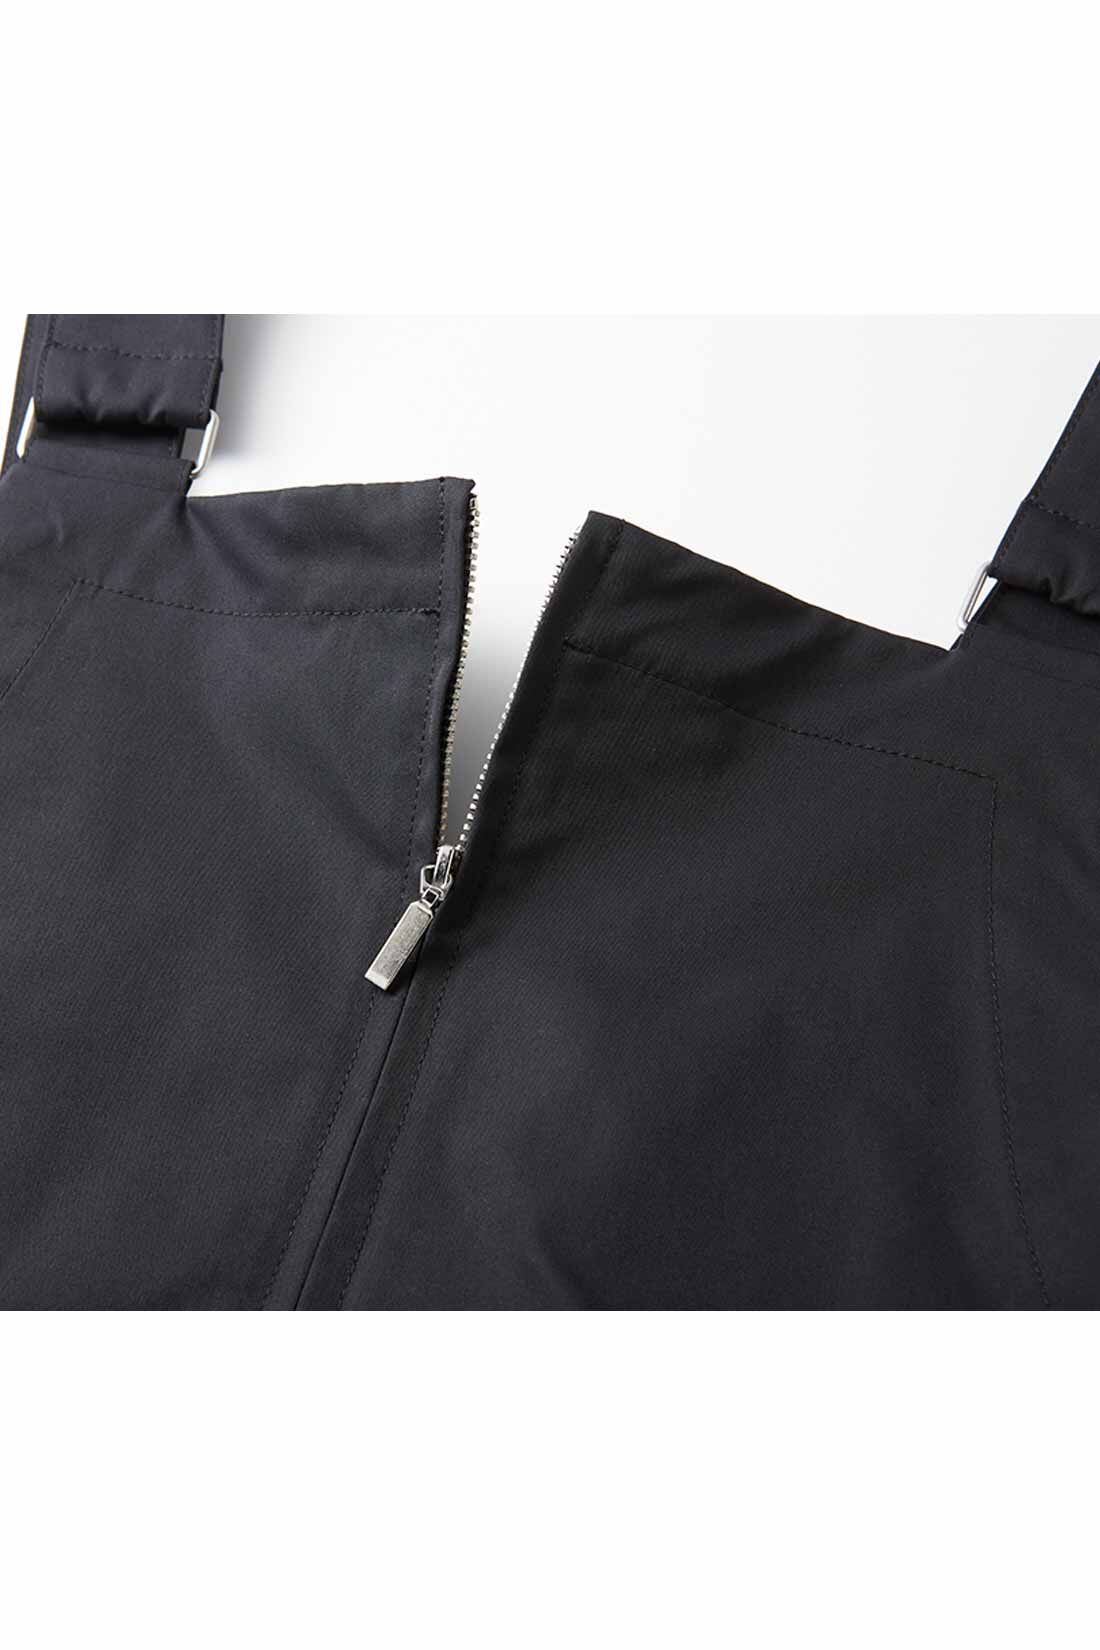 IEDIT|IEDIT[イディット]　小森美穂子さんコラボ 撥水（はっすい）素材の大人ジャンパースカート〈ブラック〉|インナーに合わせて開き加減を調整できるフロントファスナーもデザインポイント。